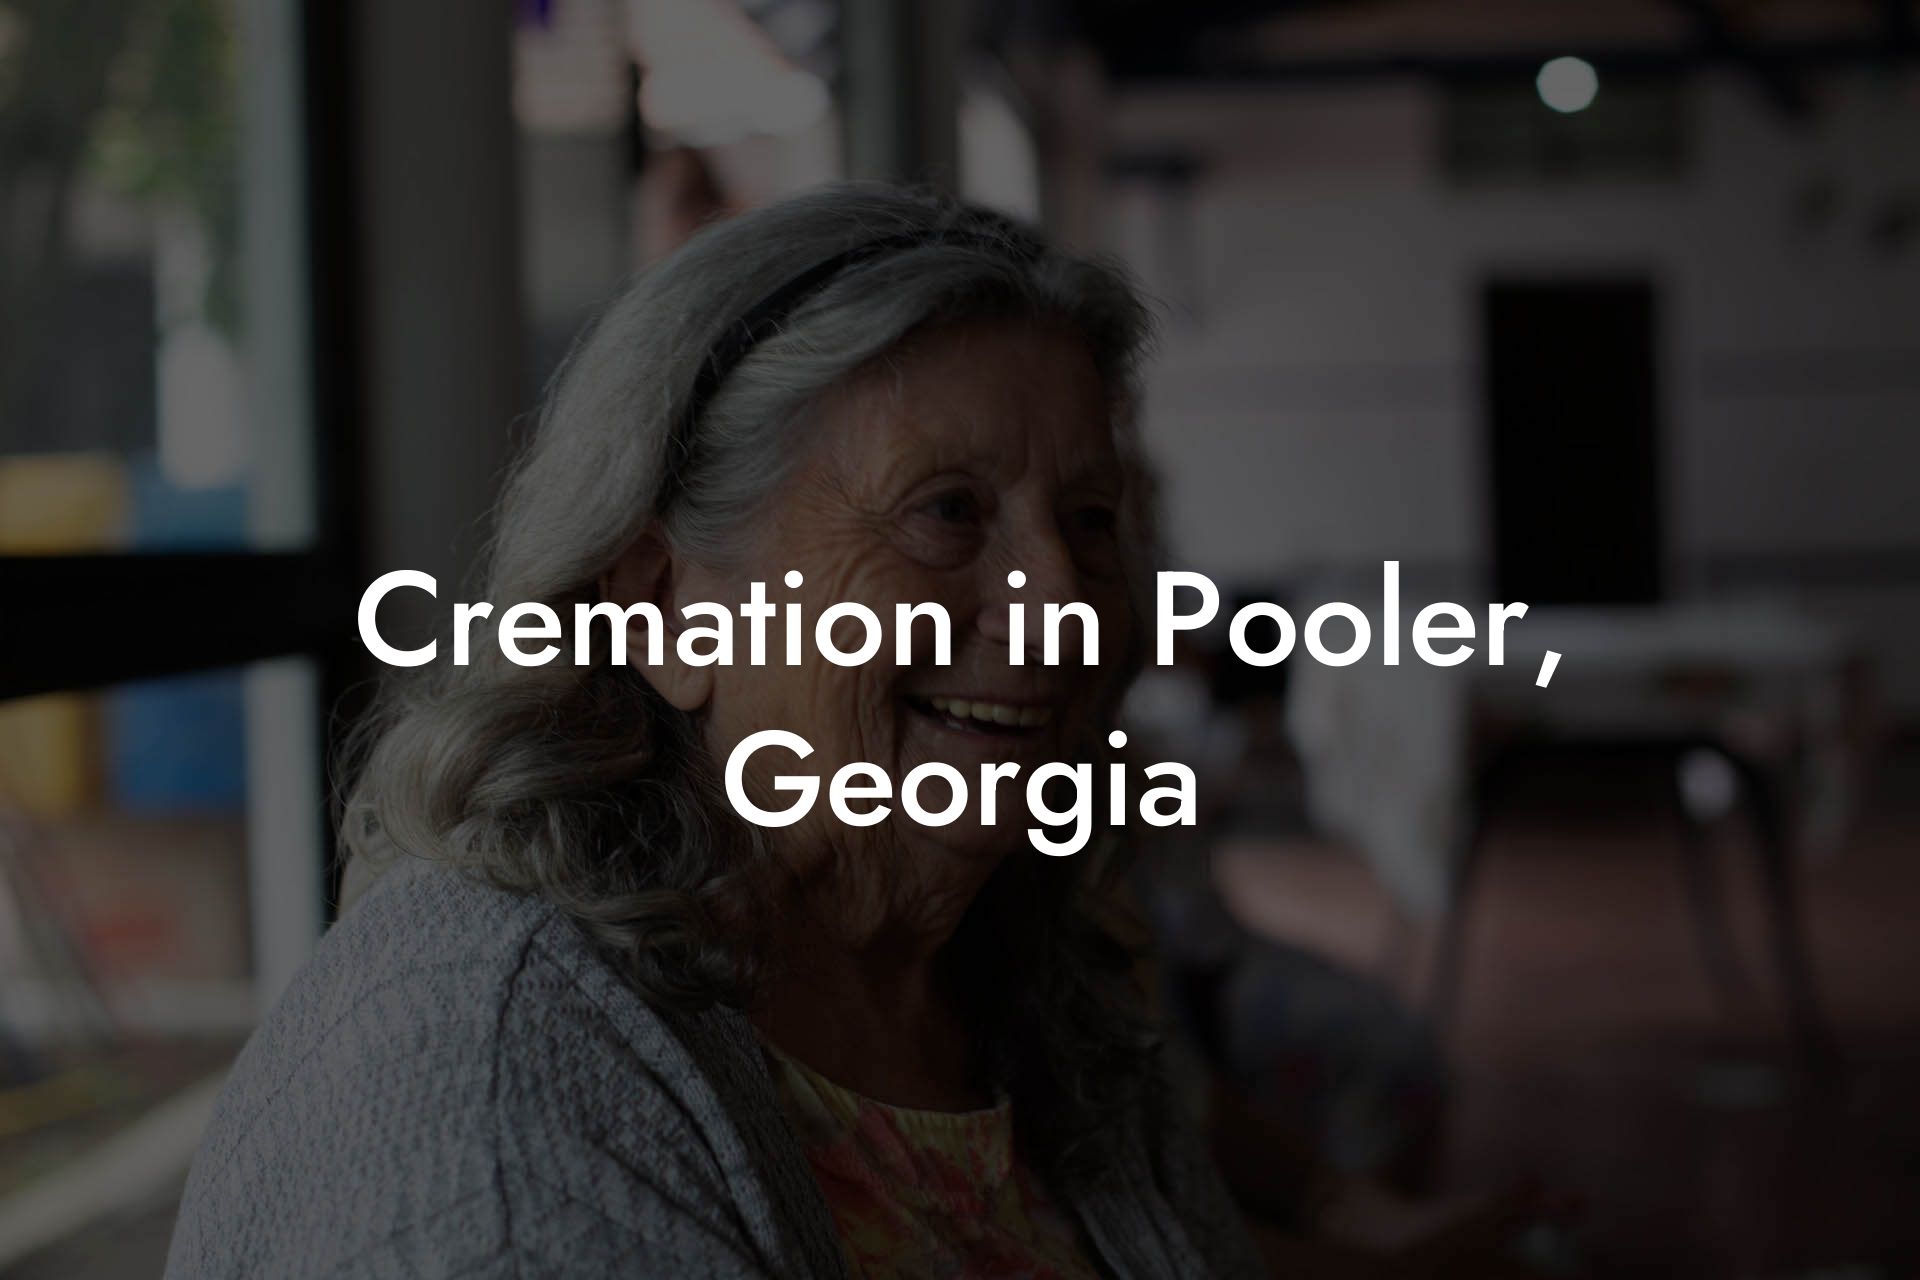 Cremation in Pooler, Georgia